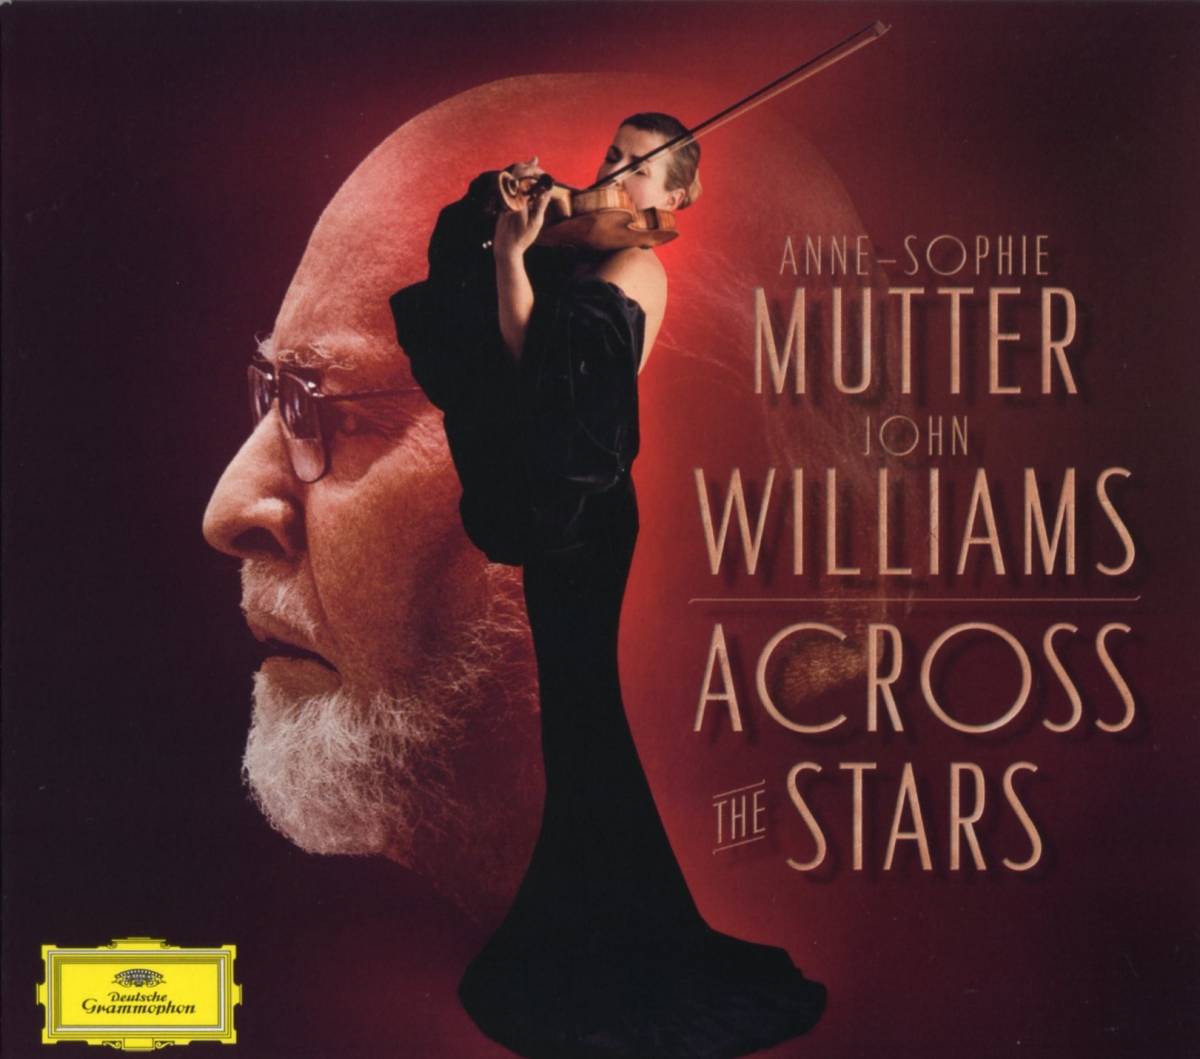 ACOROSS THE STARS ／ ANNE-SOPHIE MUTTER、JOHN WILLIAMS_画像1